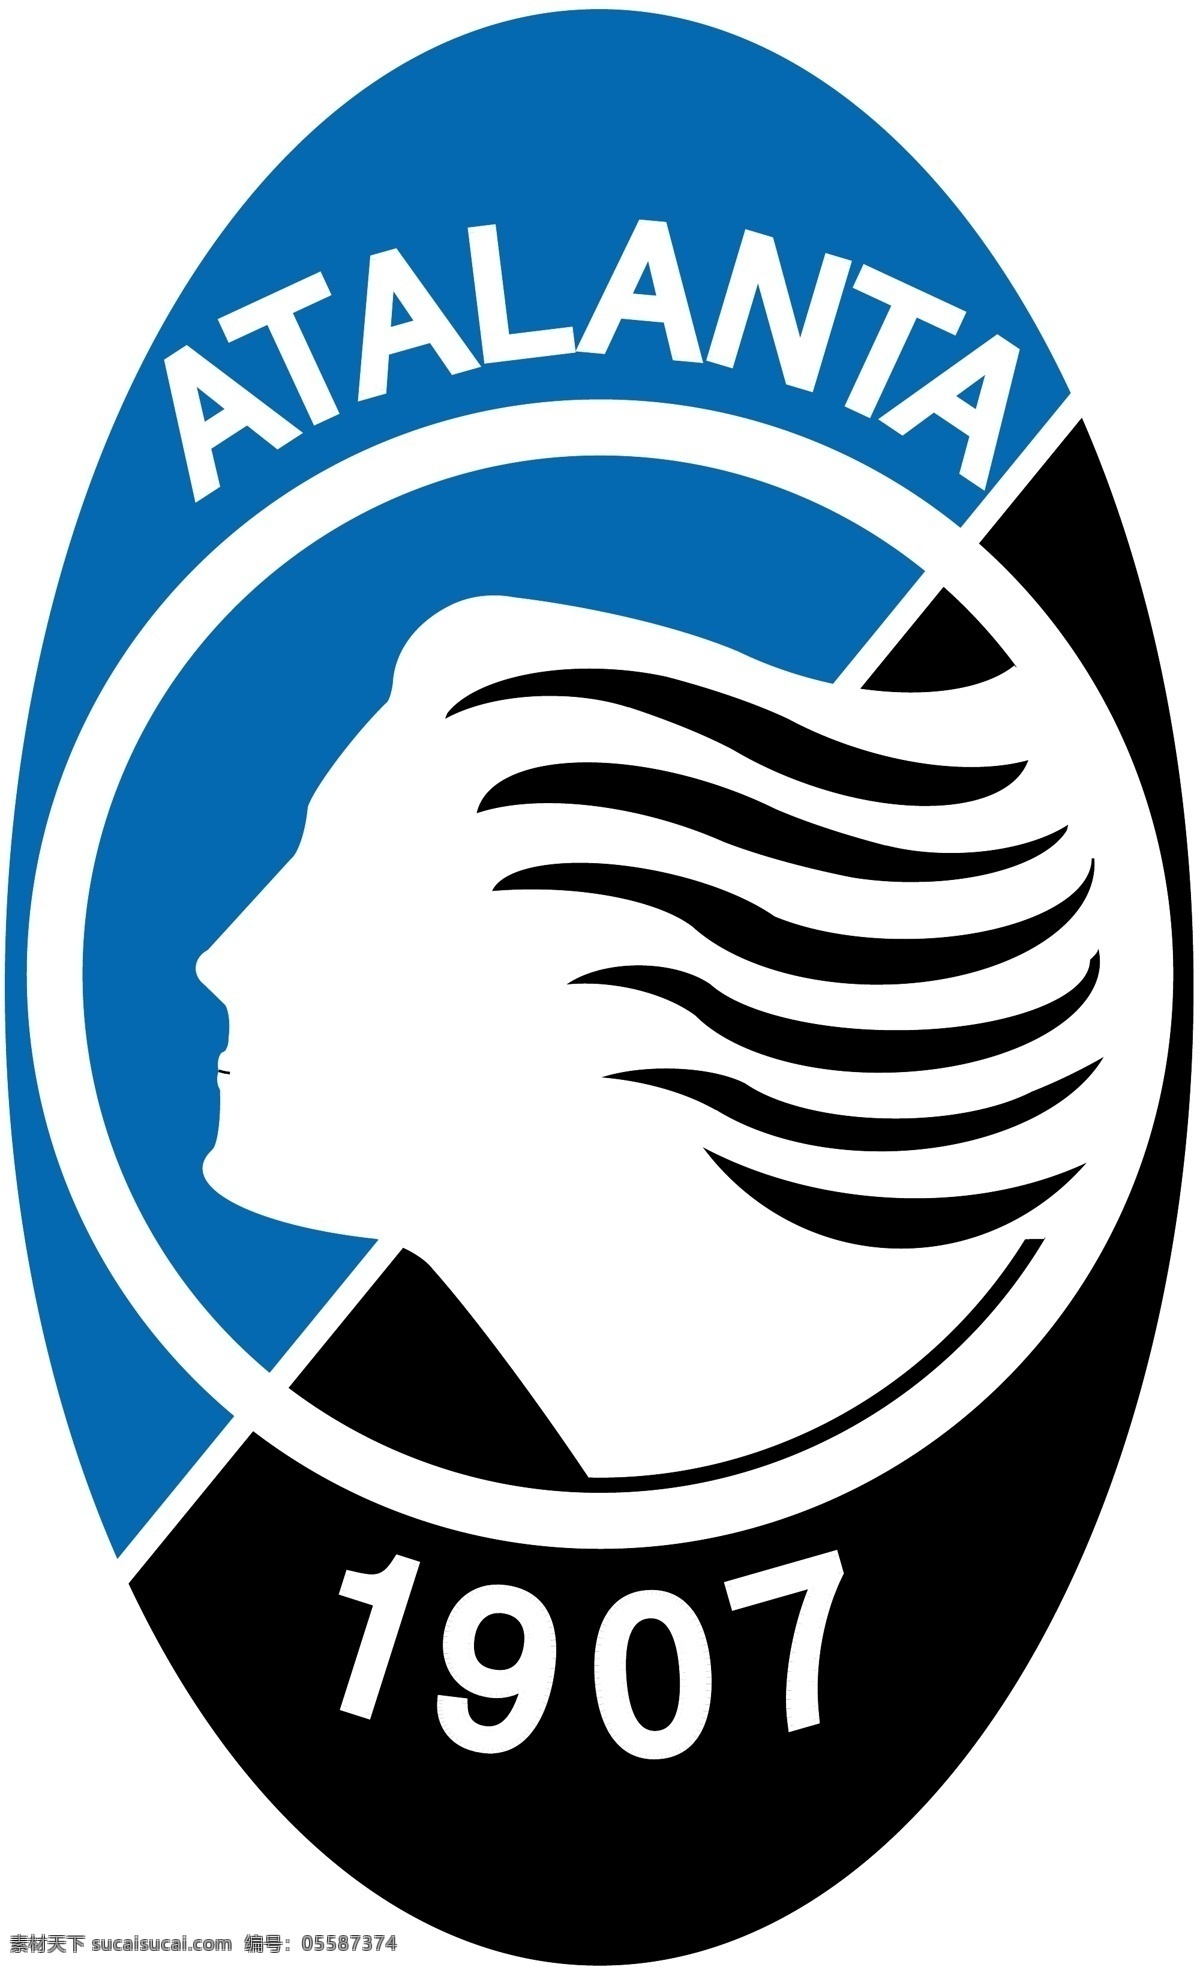 亚特兰大队 atalanta 矢量下载 网页矢量 商业矢量 logo大全 白色